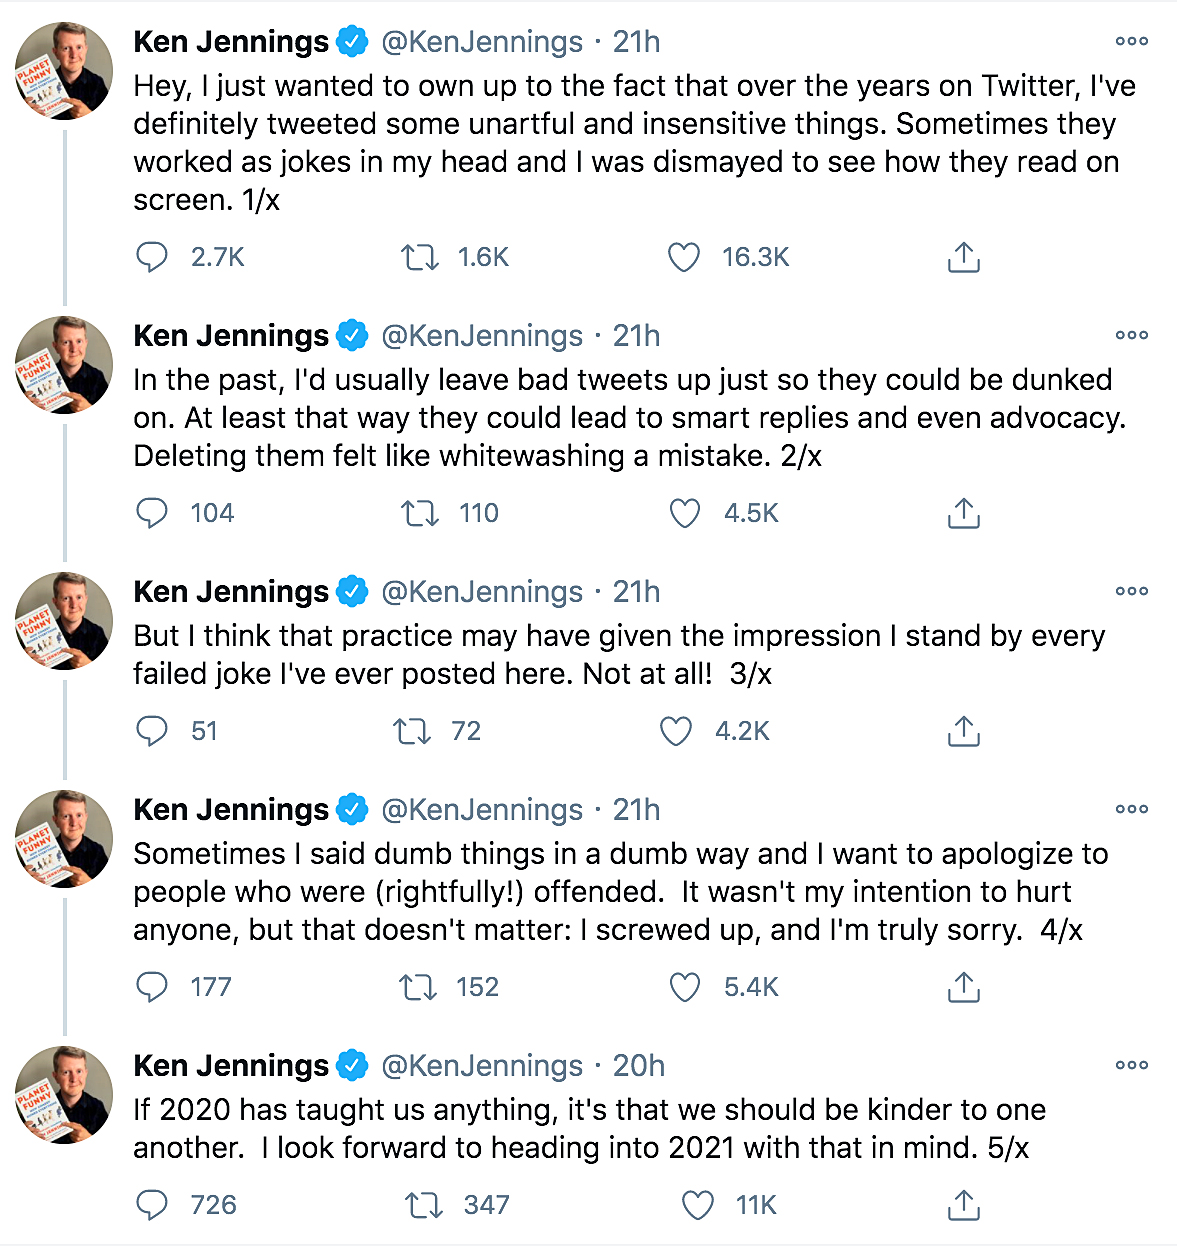 Jeopardy Winner Ken Jennings Apologizes For Insensitive Tweets